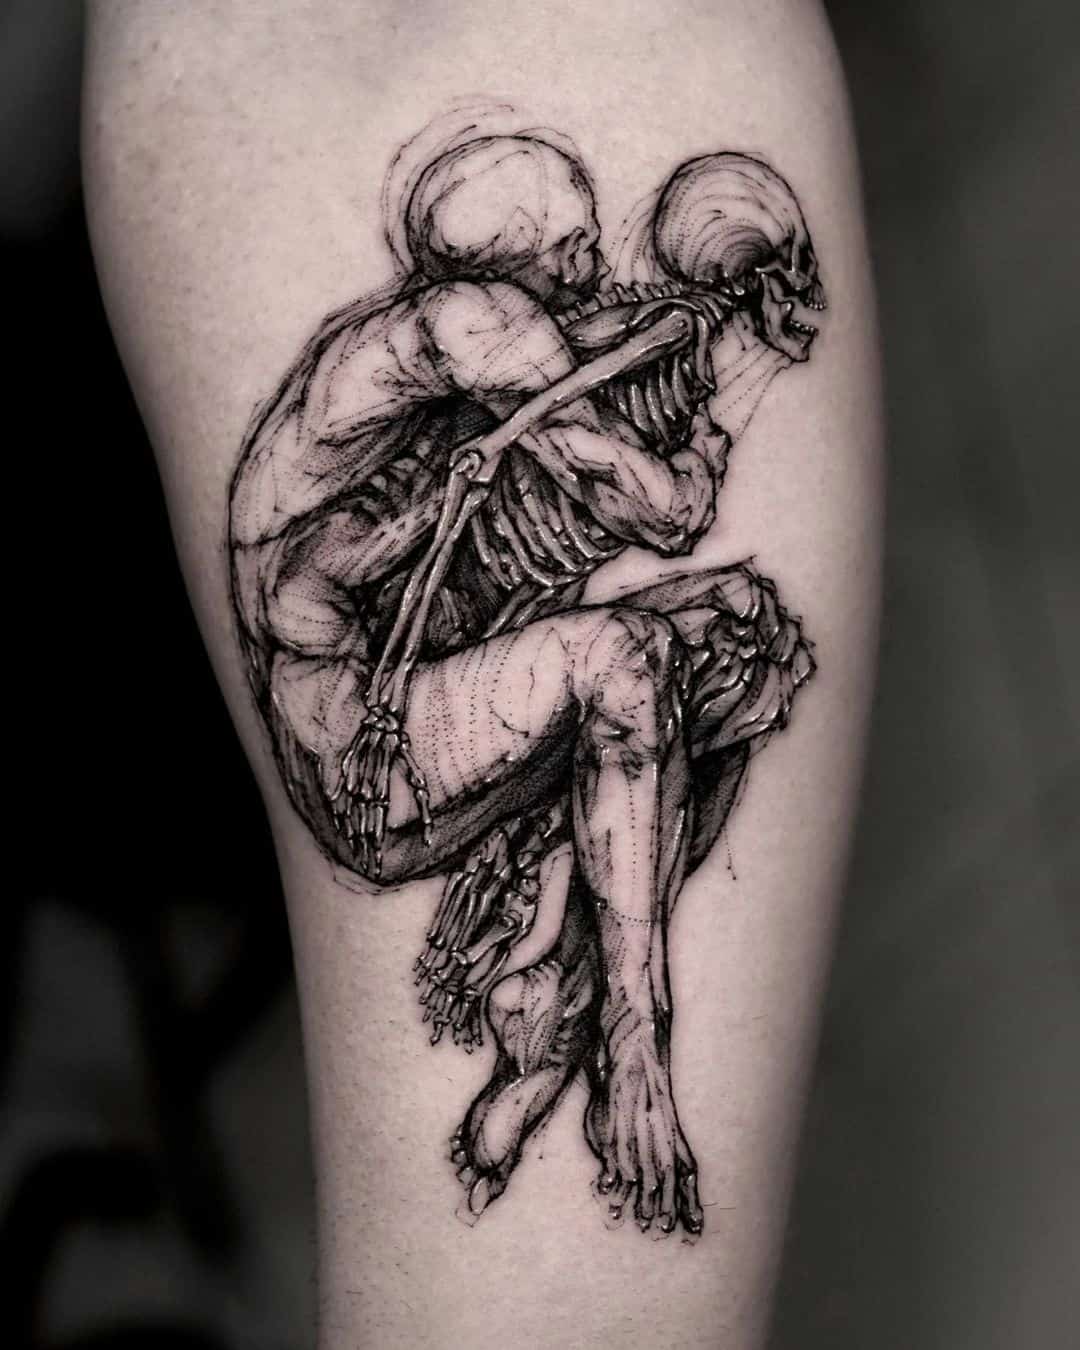 Skull tattoo by love.skulls.vn